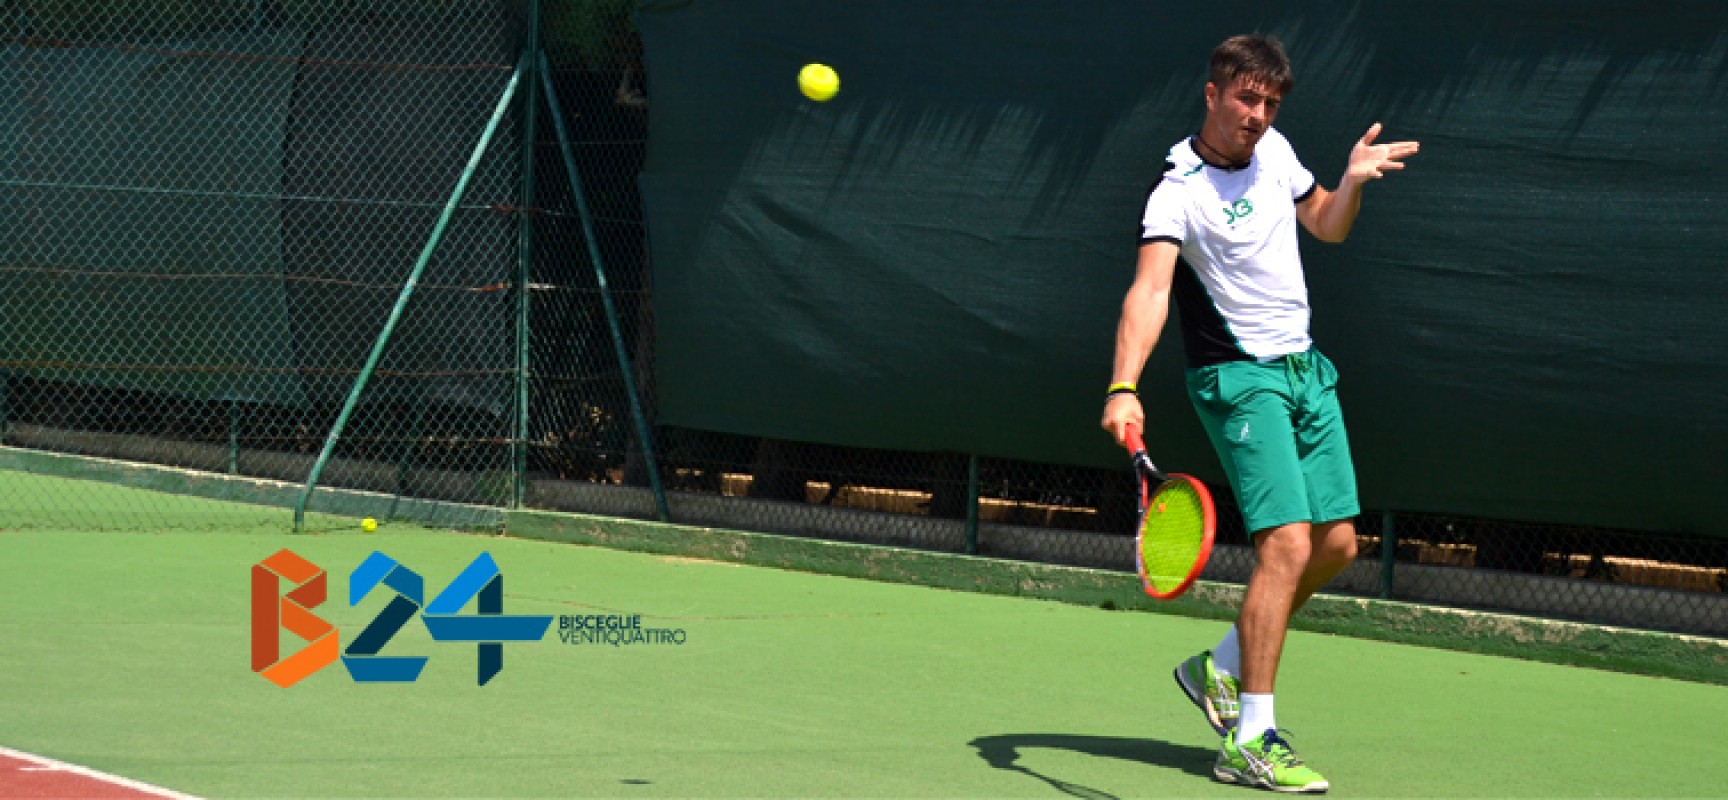 Lo Sporting Tennis Club Bisceglie batte il Milago Tennis Center e conquista la salvezza!